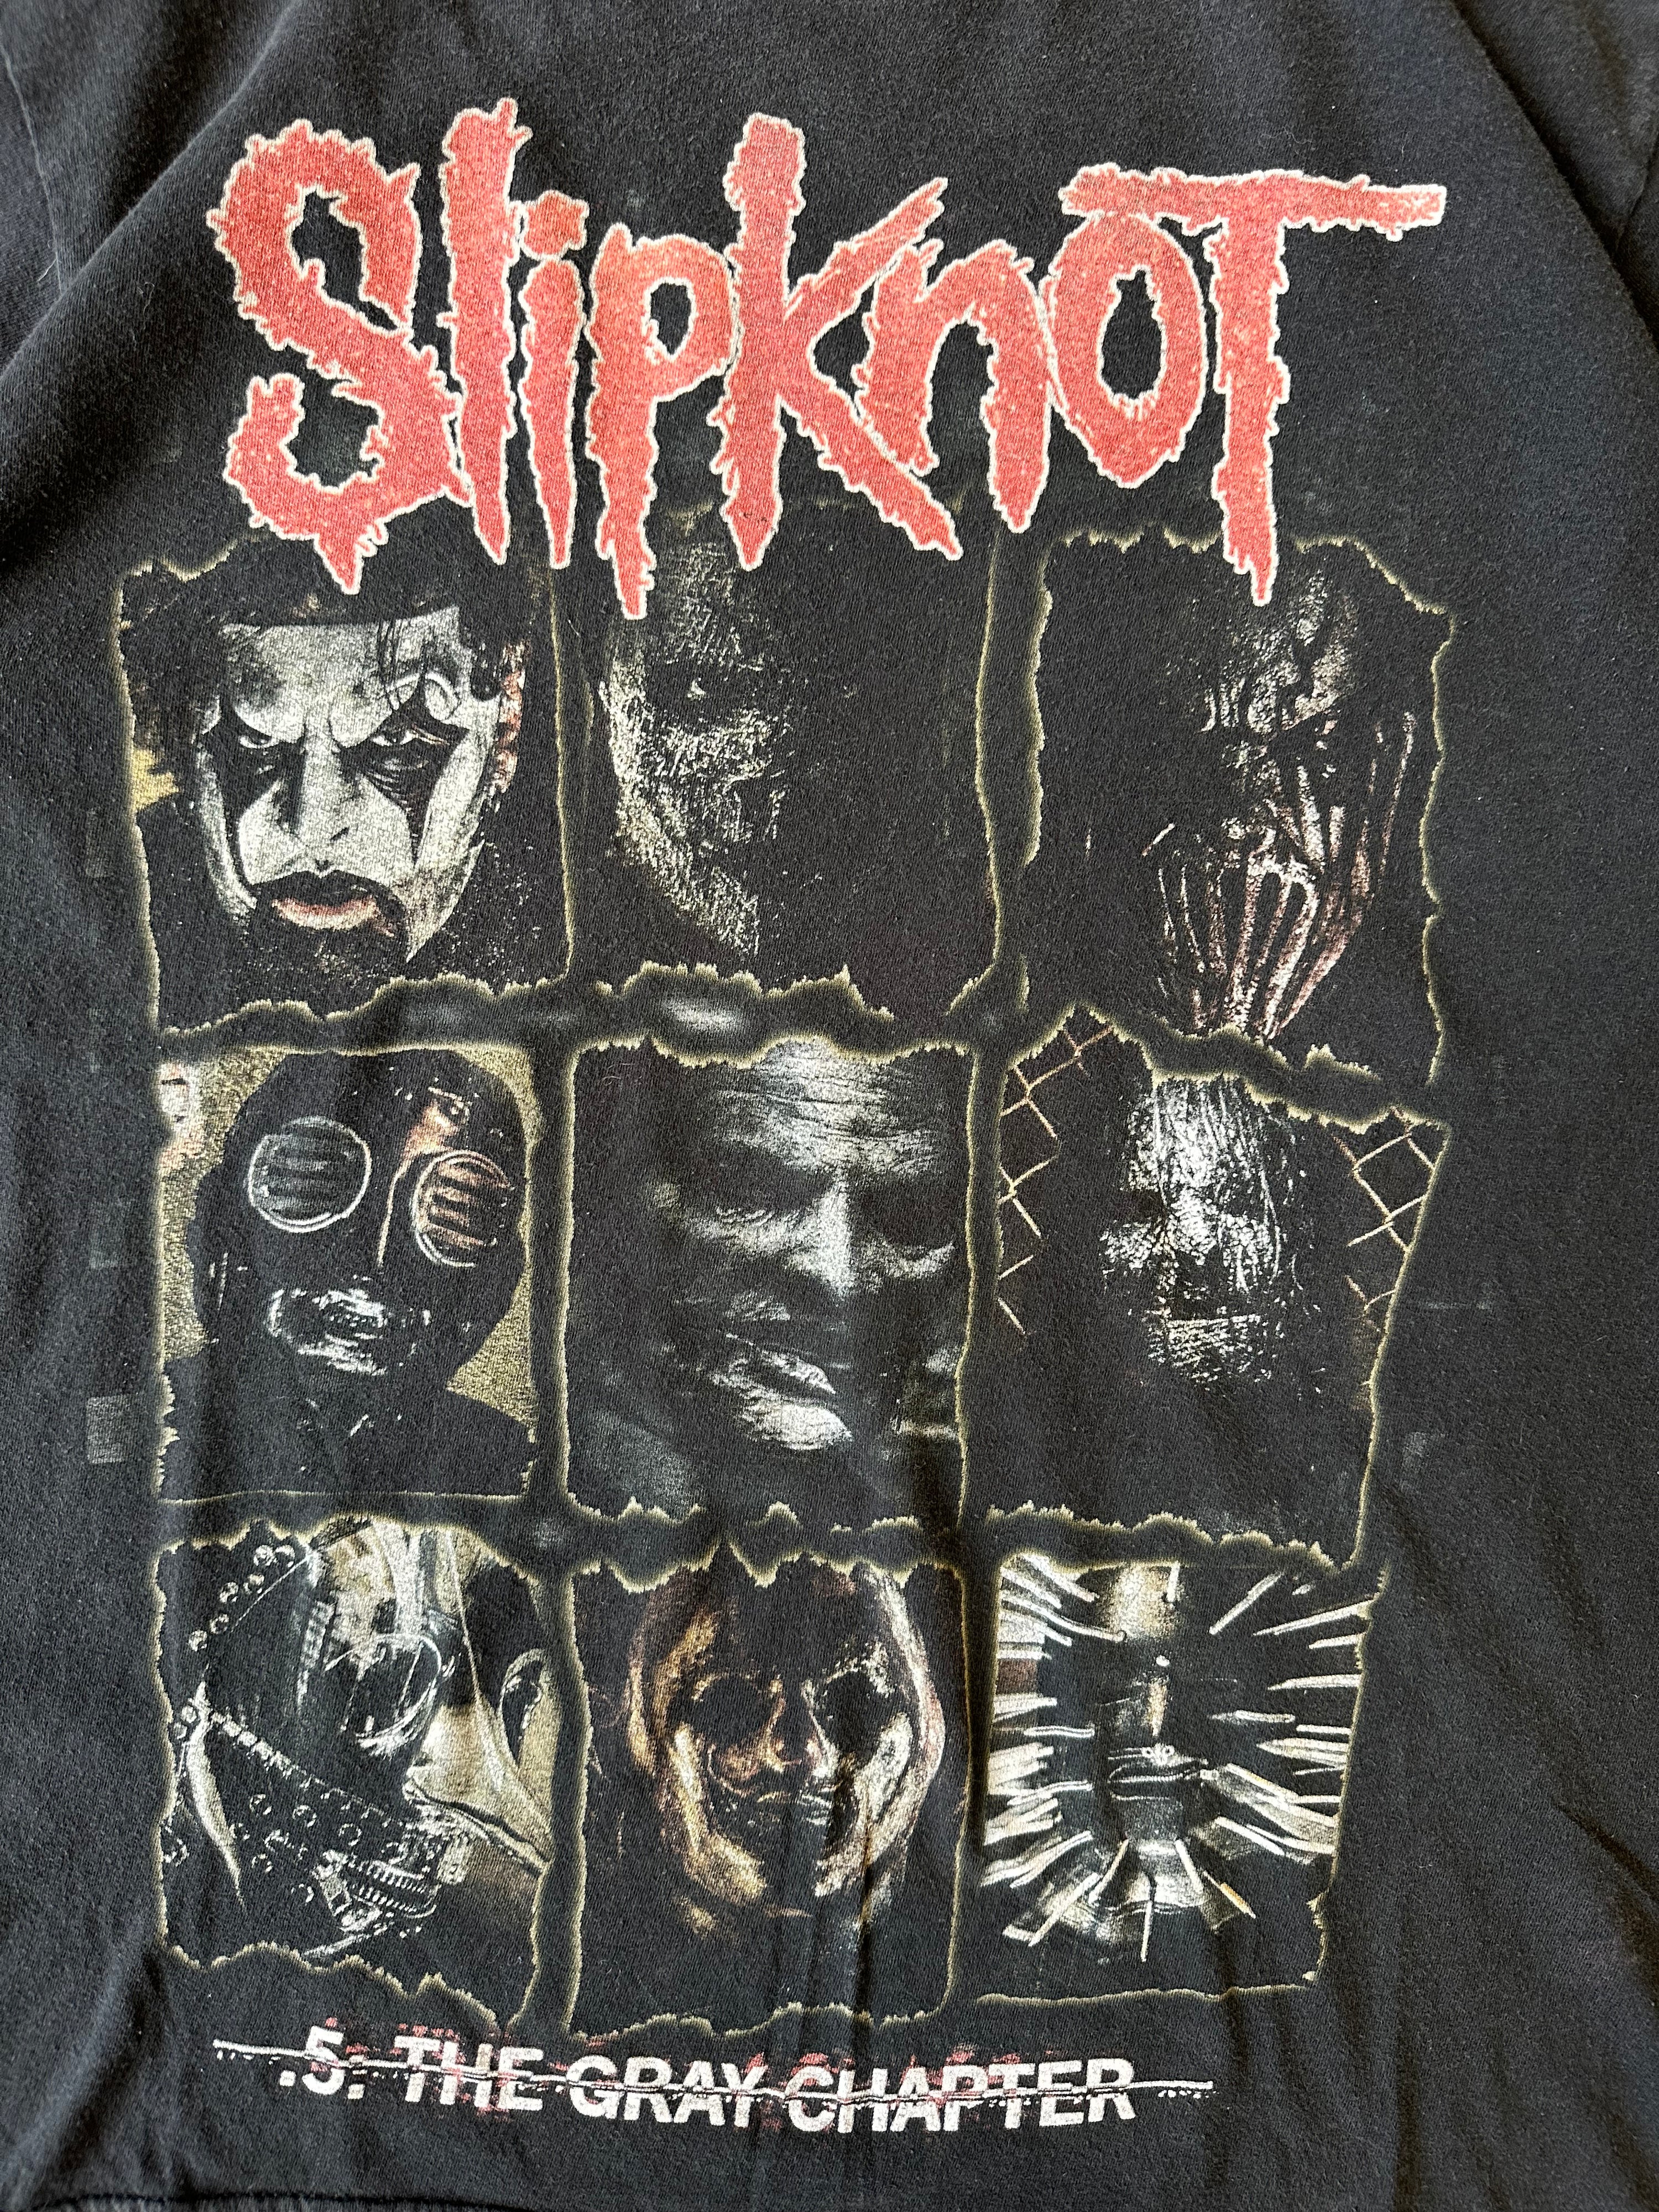 00s Slipknot The Gray Chapter T-Shirt - Medium